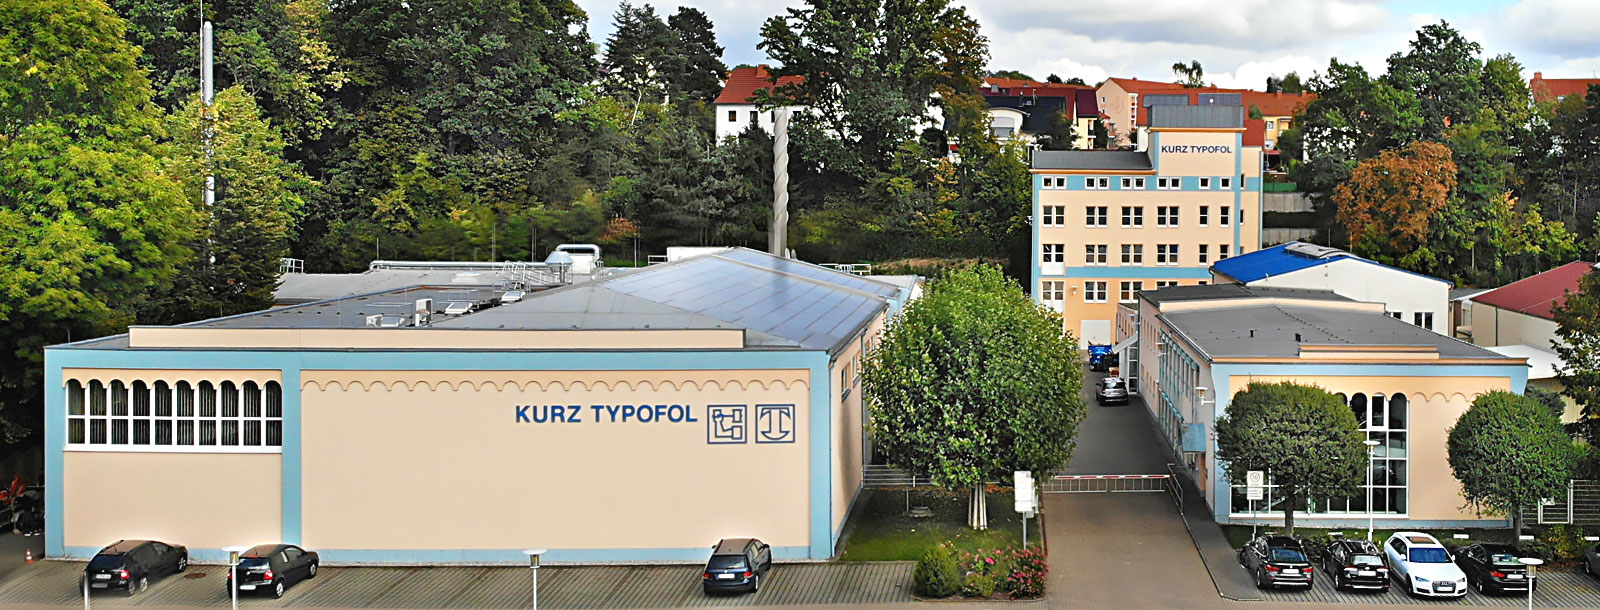 Firmensitz von KURZ TYPOFOL in Döbeln